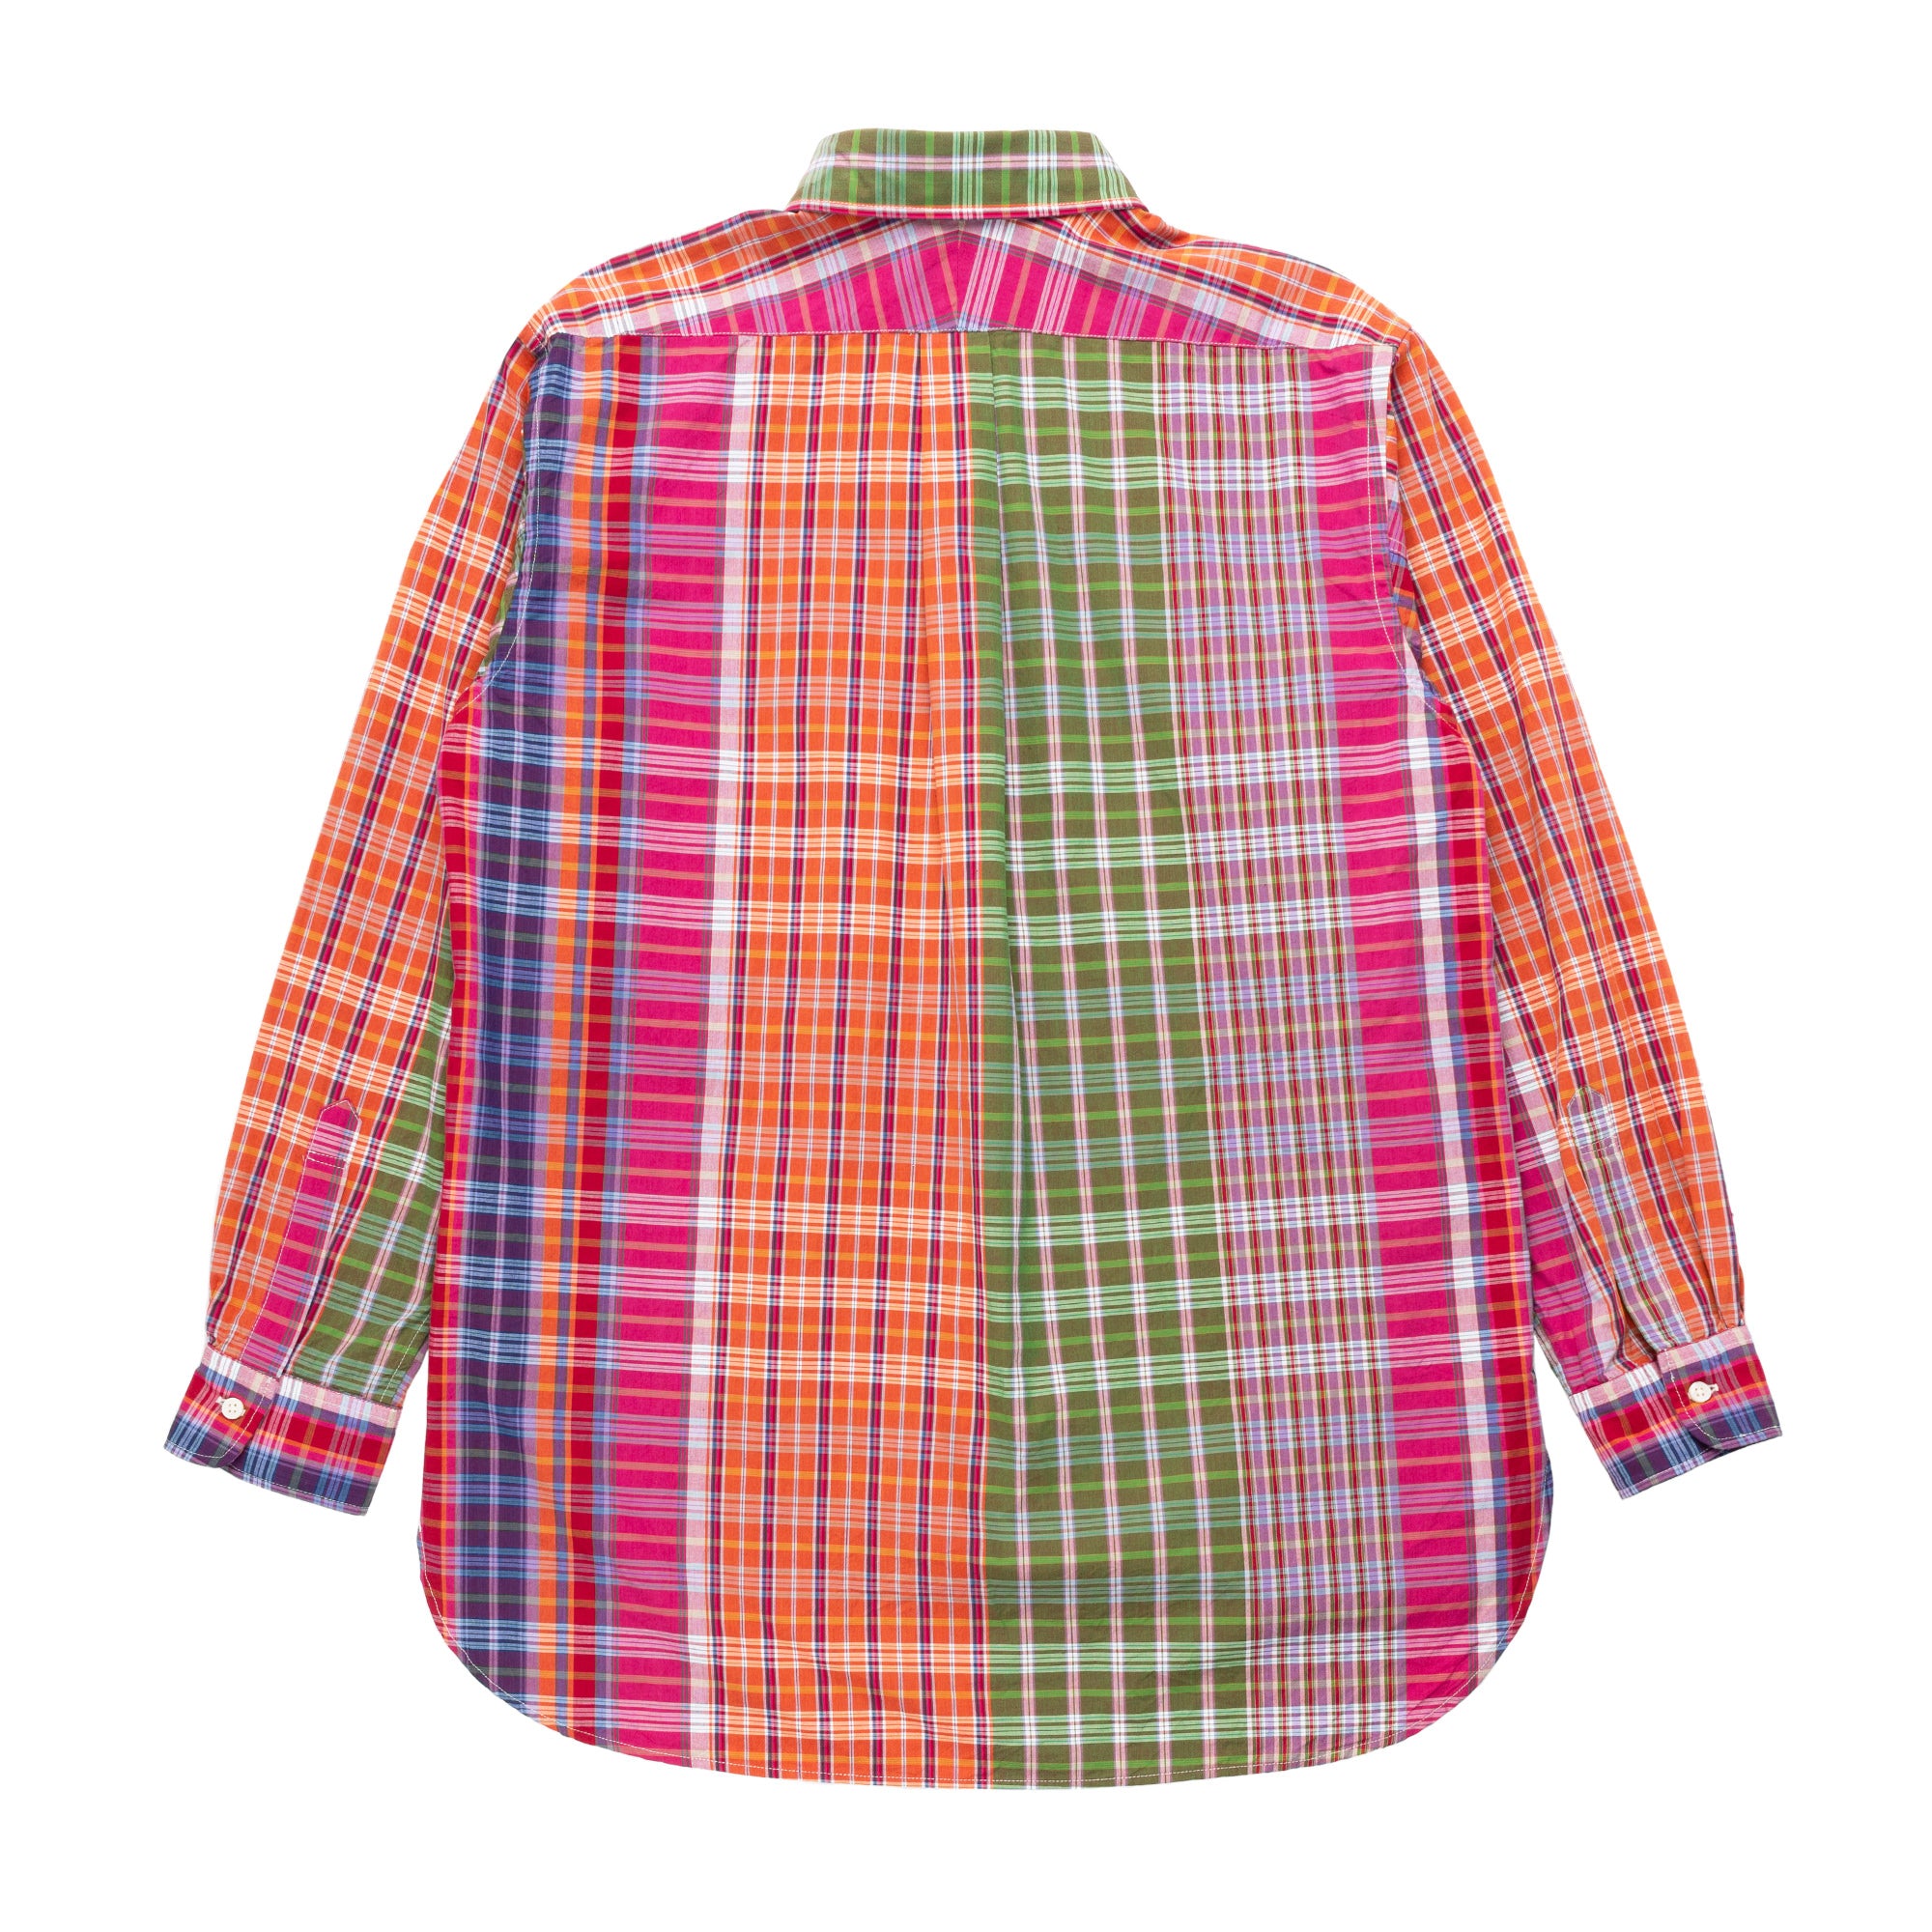 19th Century BD Shirt 23S1A001 Multi Color Cotton BC